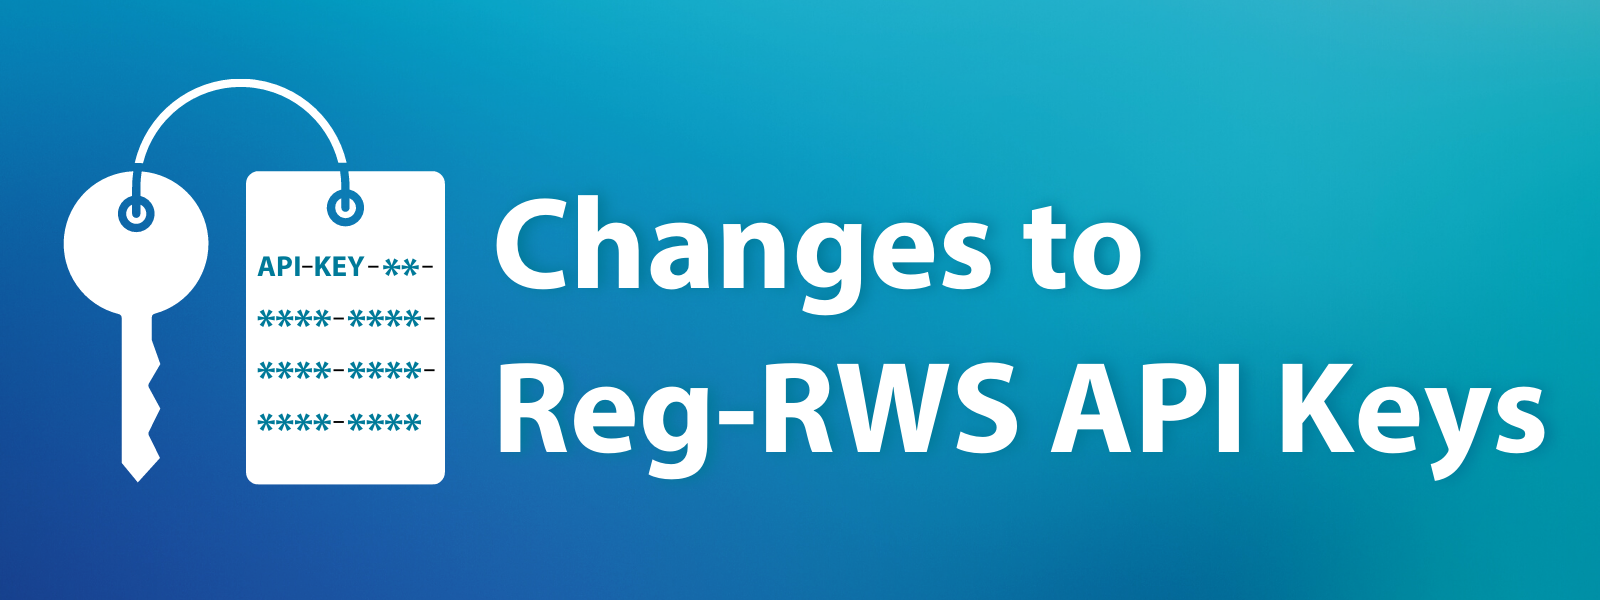 Changes to Reg-RWS API Keys